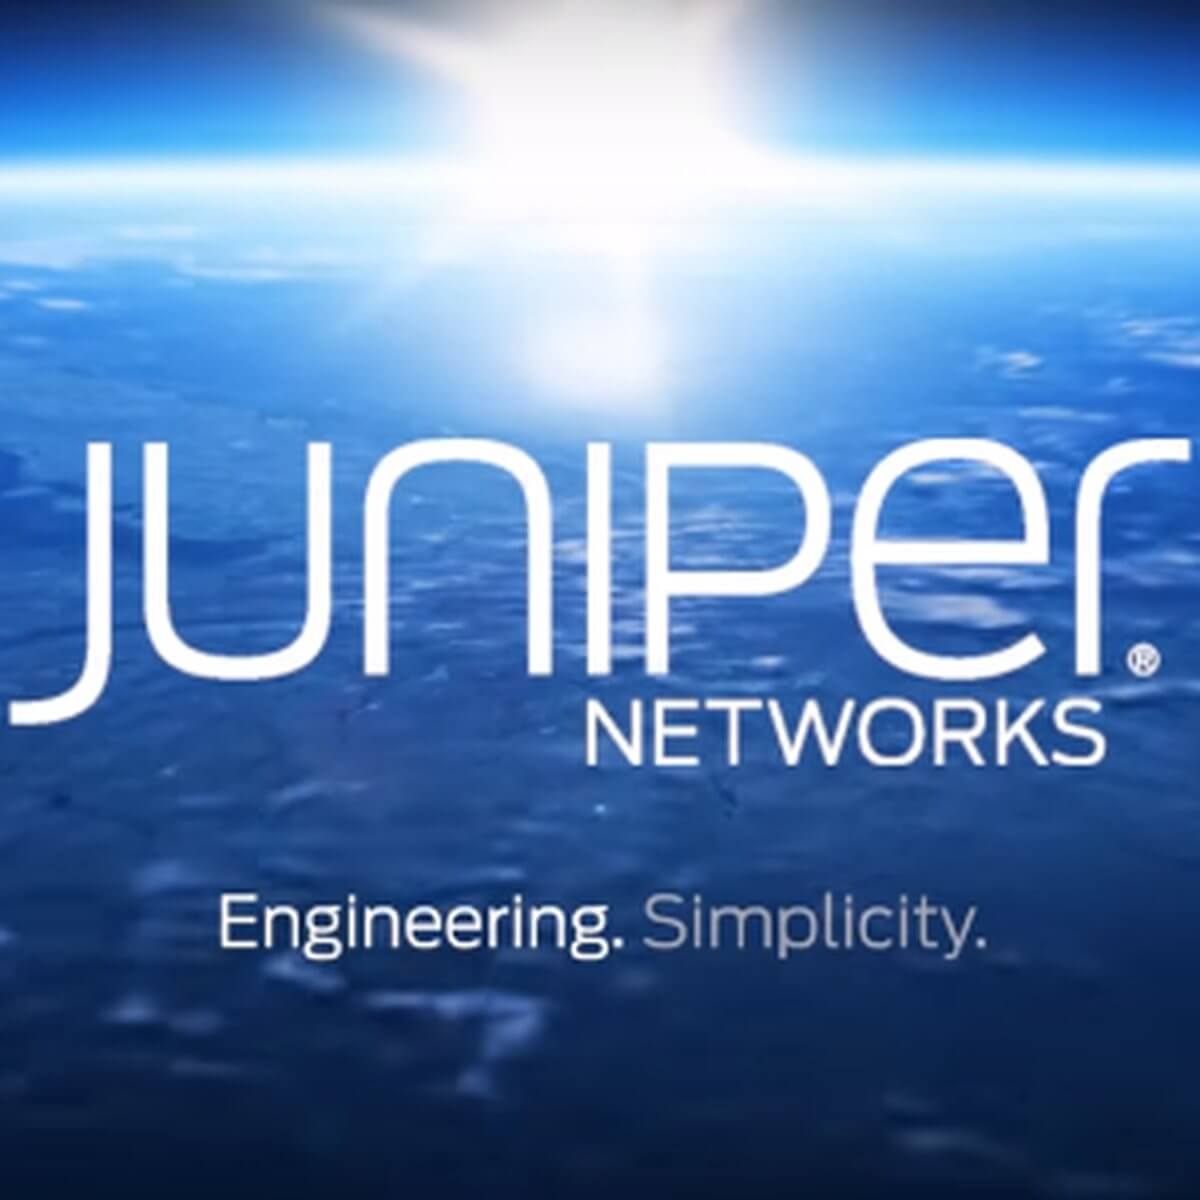 Nc windows app 23712 juniper network connect cigna clinics phoenix